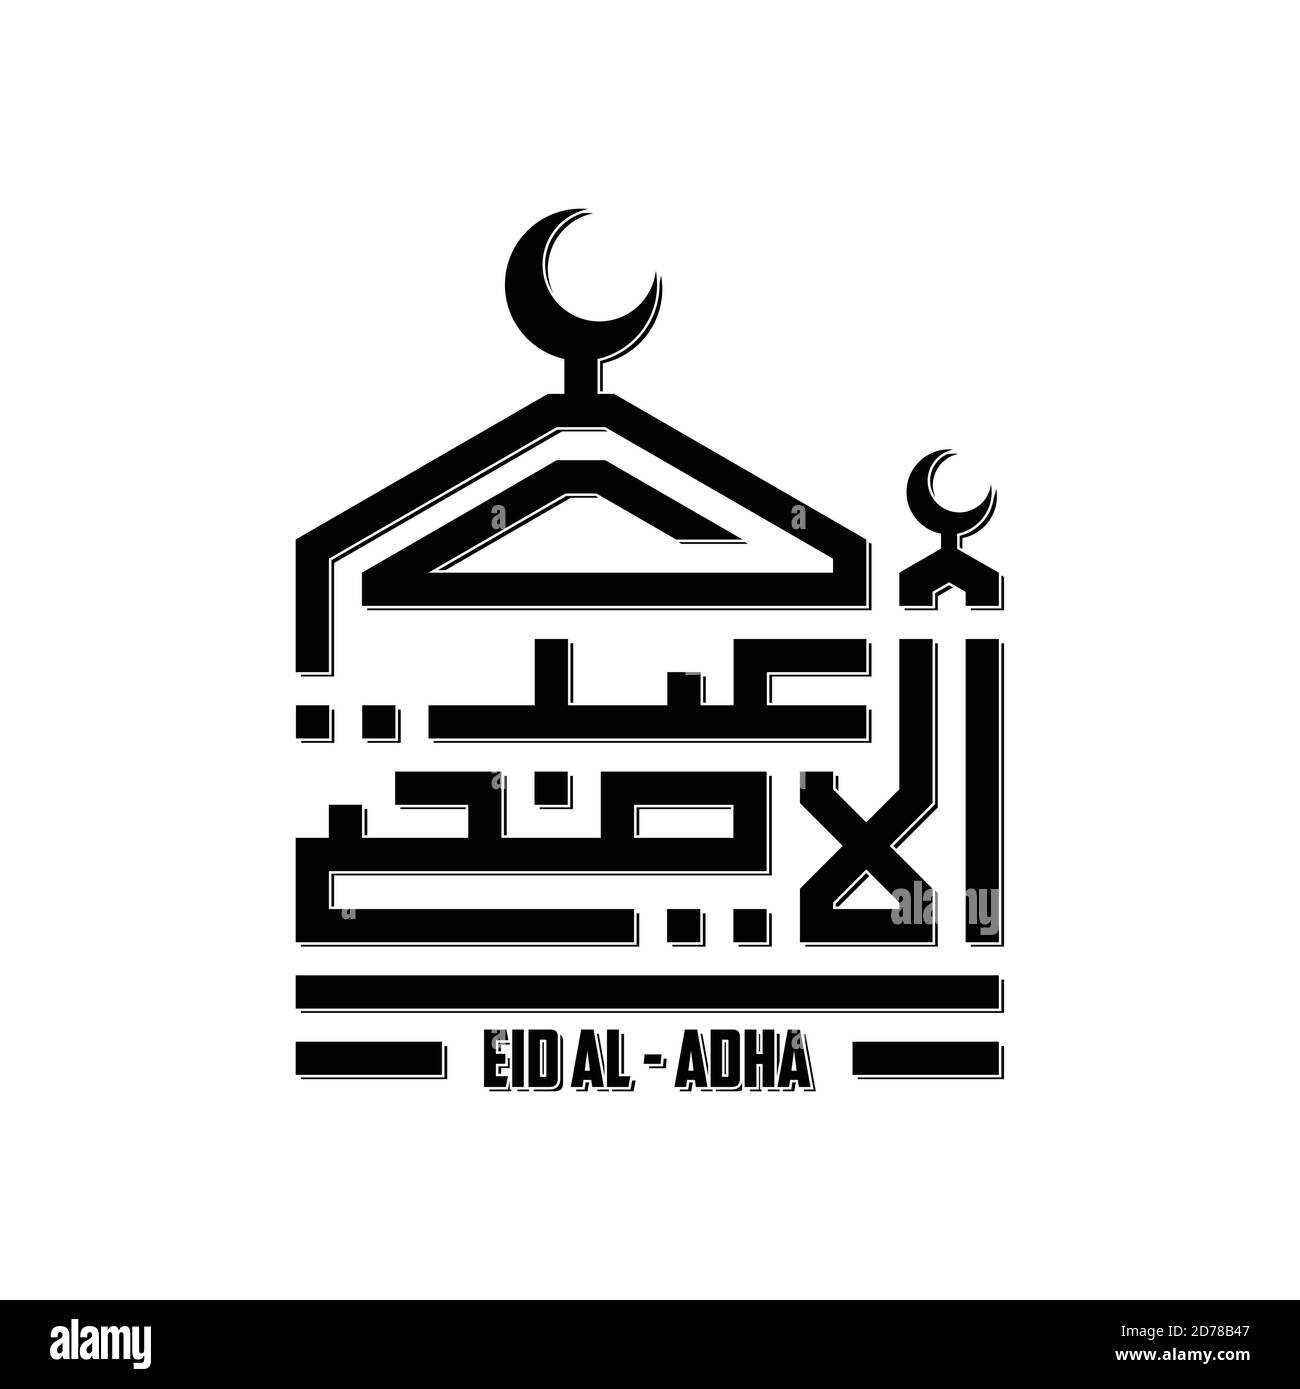 Vecteur géométrique simple pour la police arabe musulmane calligraphie de style kufi Eid al-Adha avec mosquée. Illustration vectorielle EPS.8 EPS.10 Illustration de Vecteur